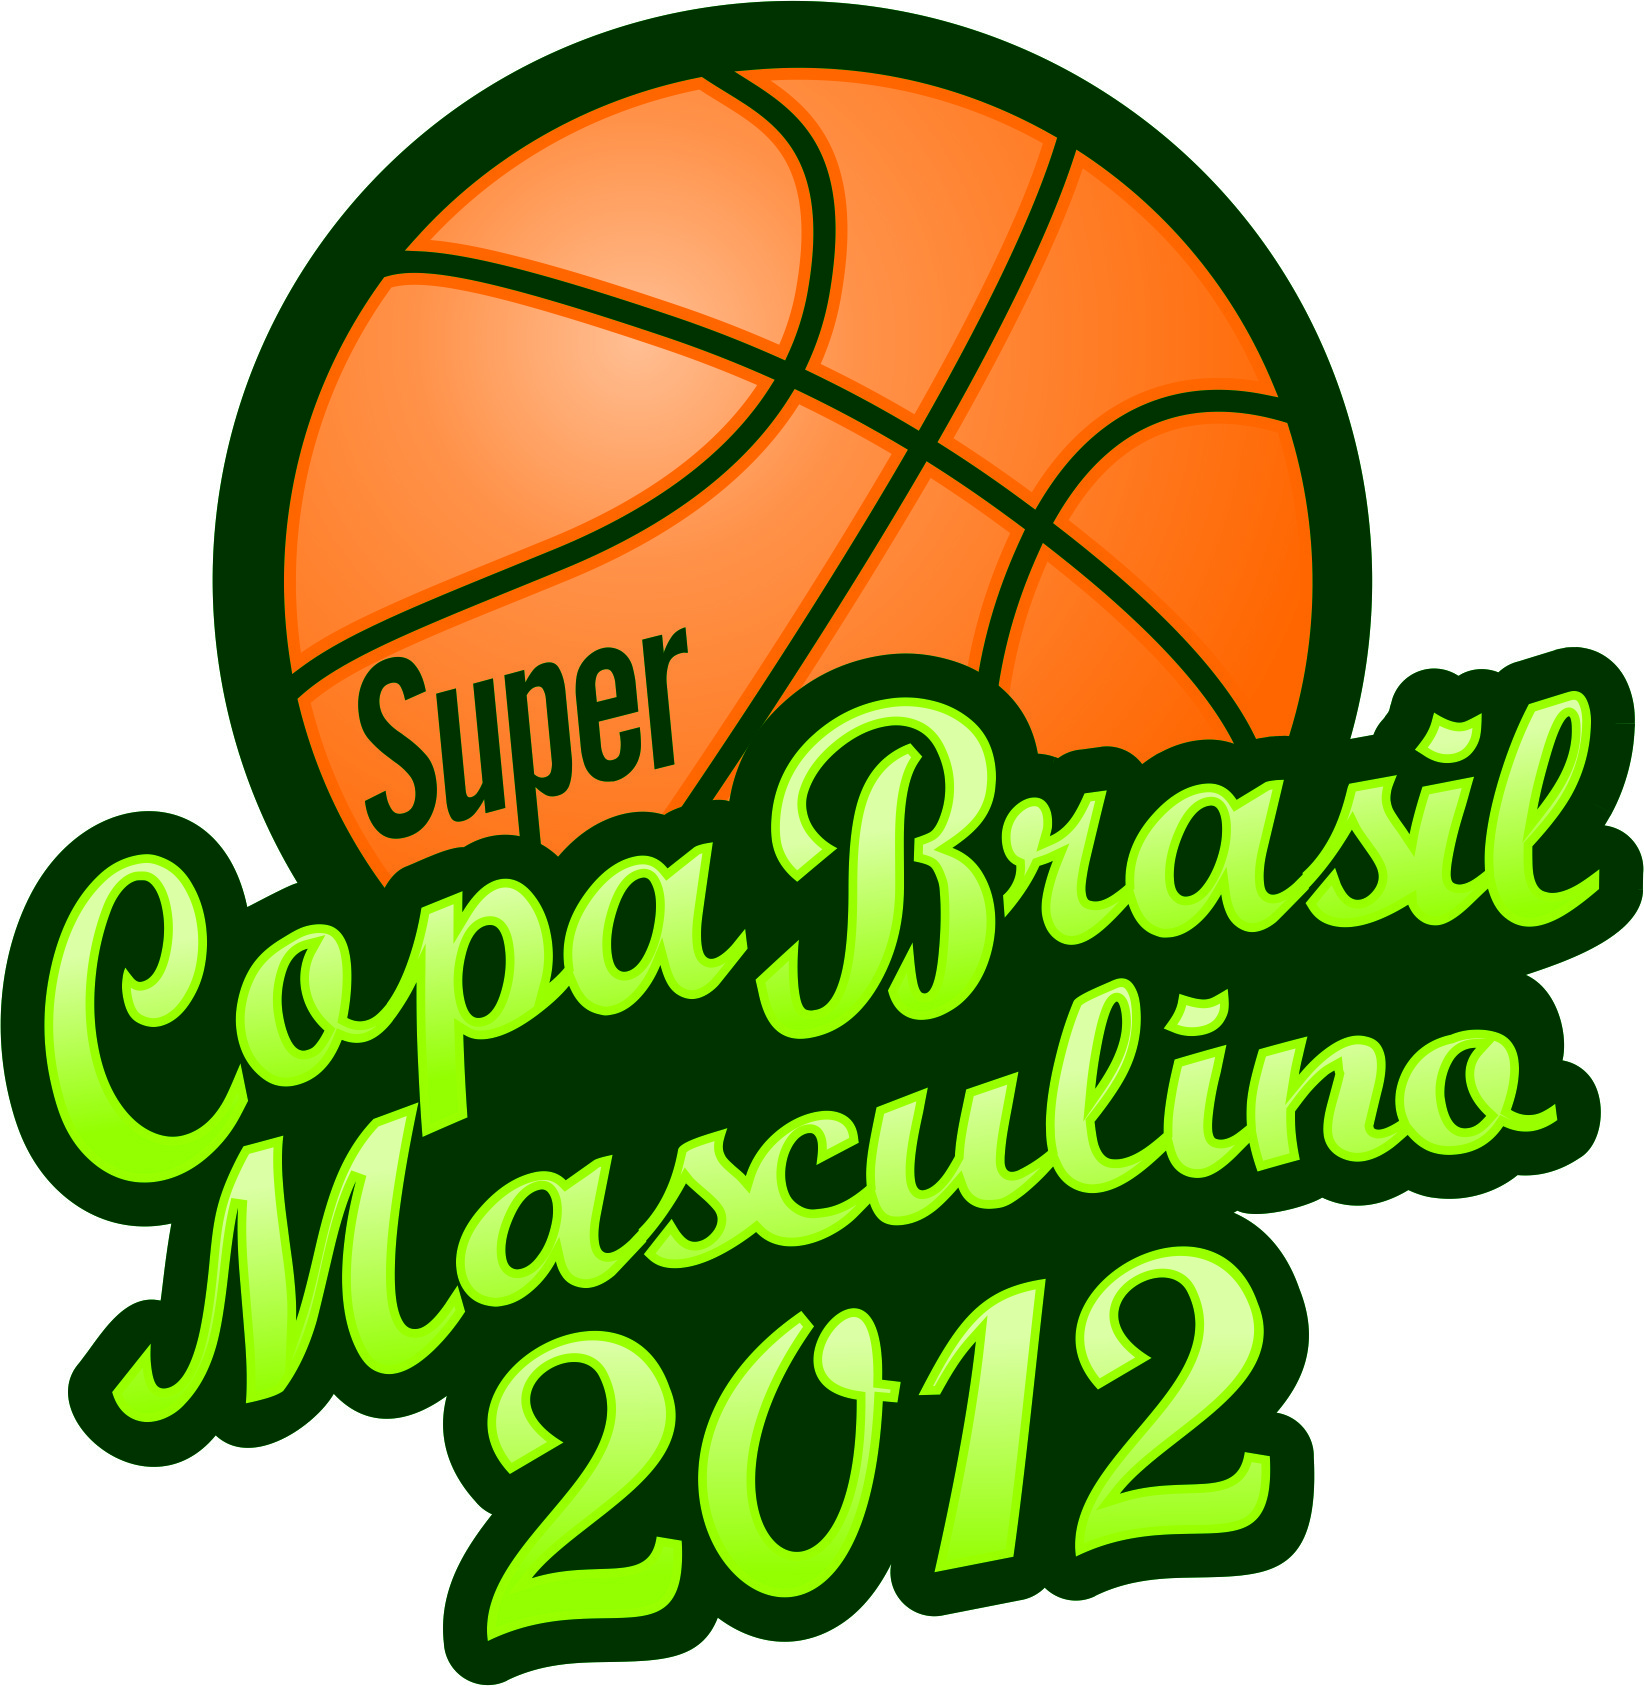 Super Copa Brasil 2012 LOGO